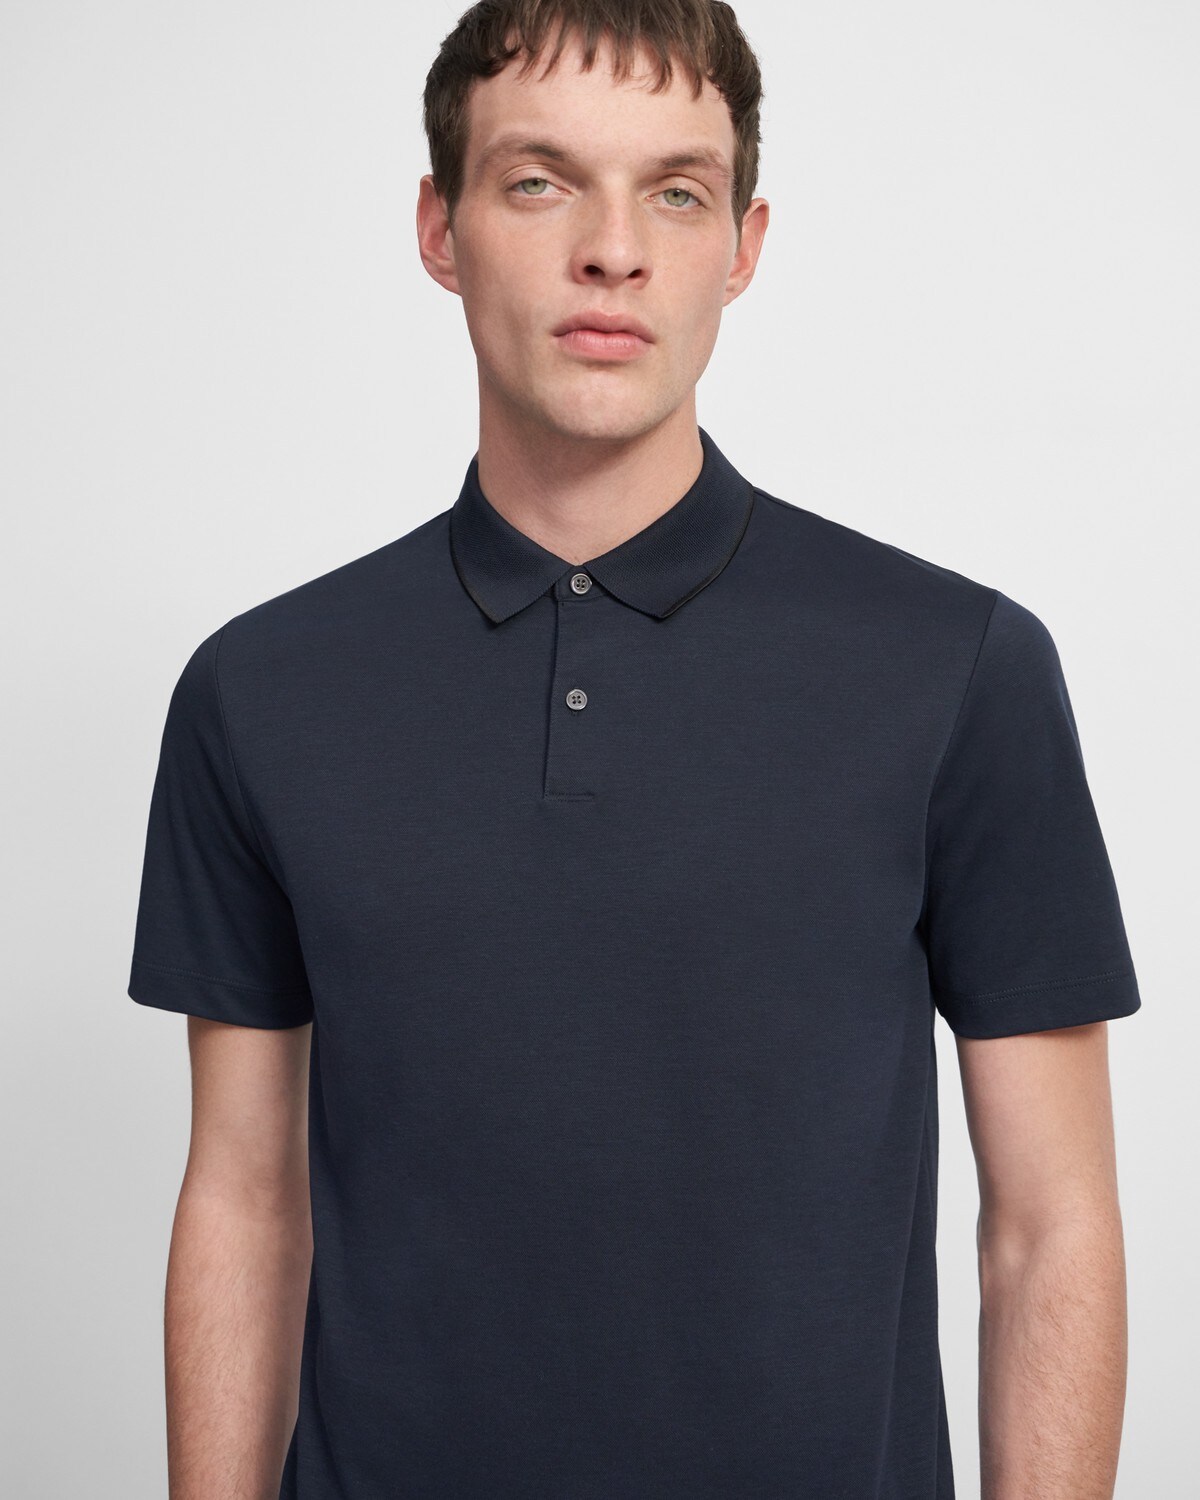 Standard Polo Shirt in Piqué Cotton